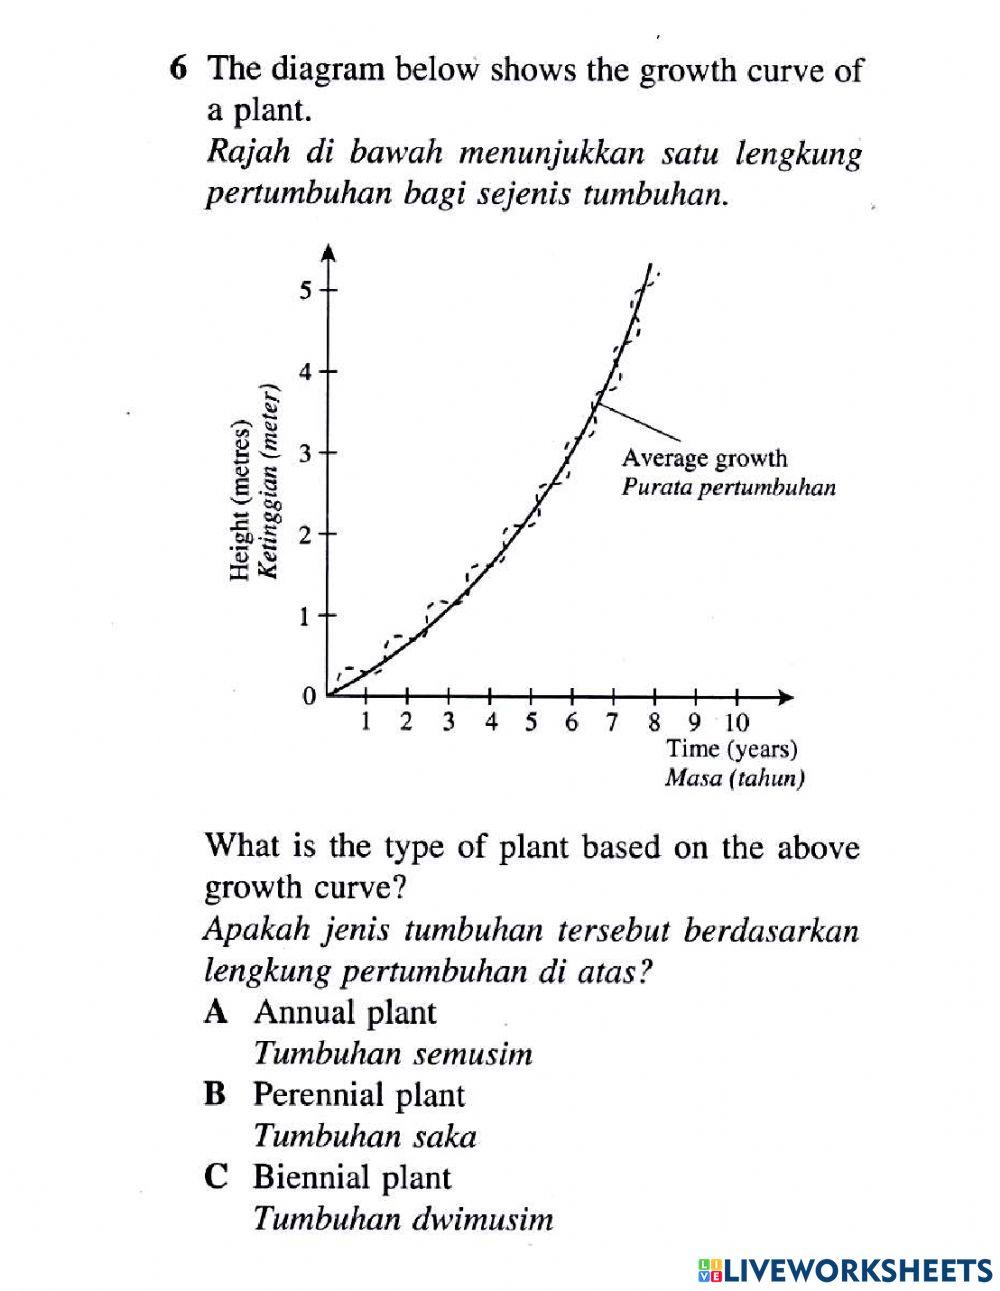 Organisasi tisu tumbuhan dan pertumbuhan